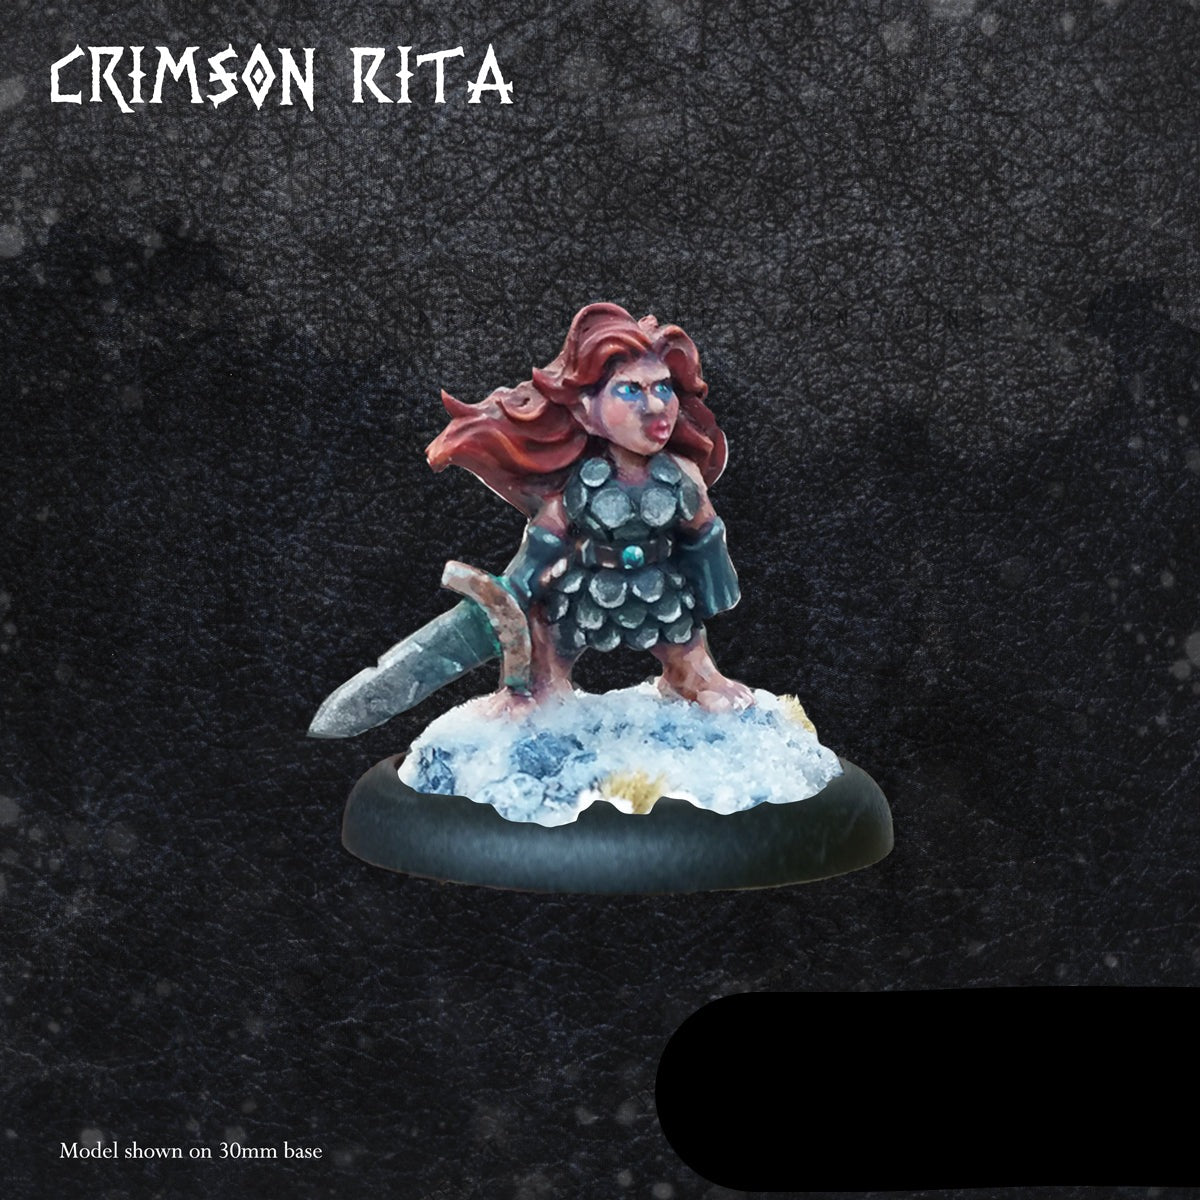 Crimson Rita